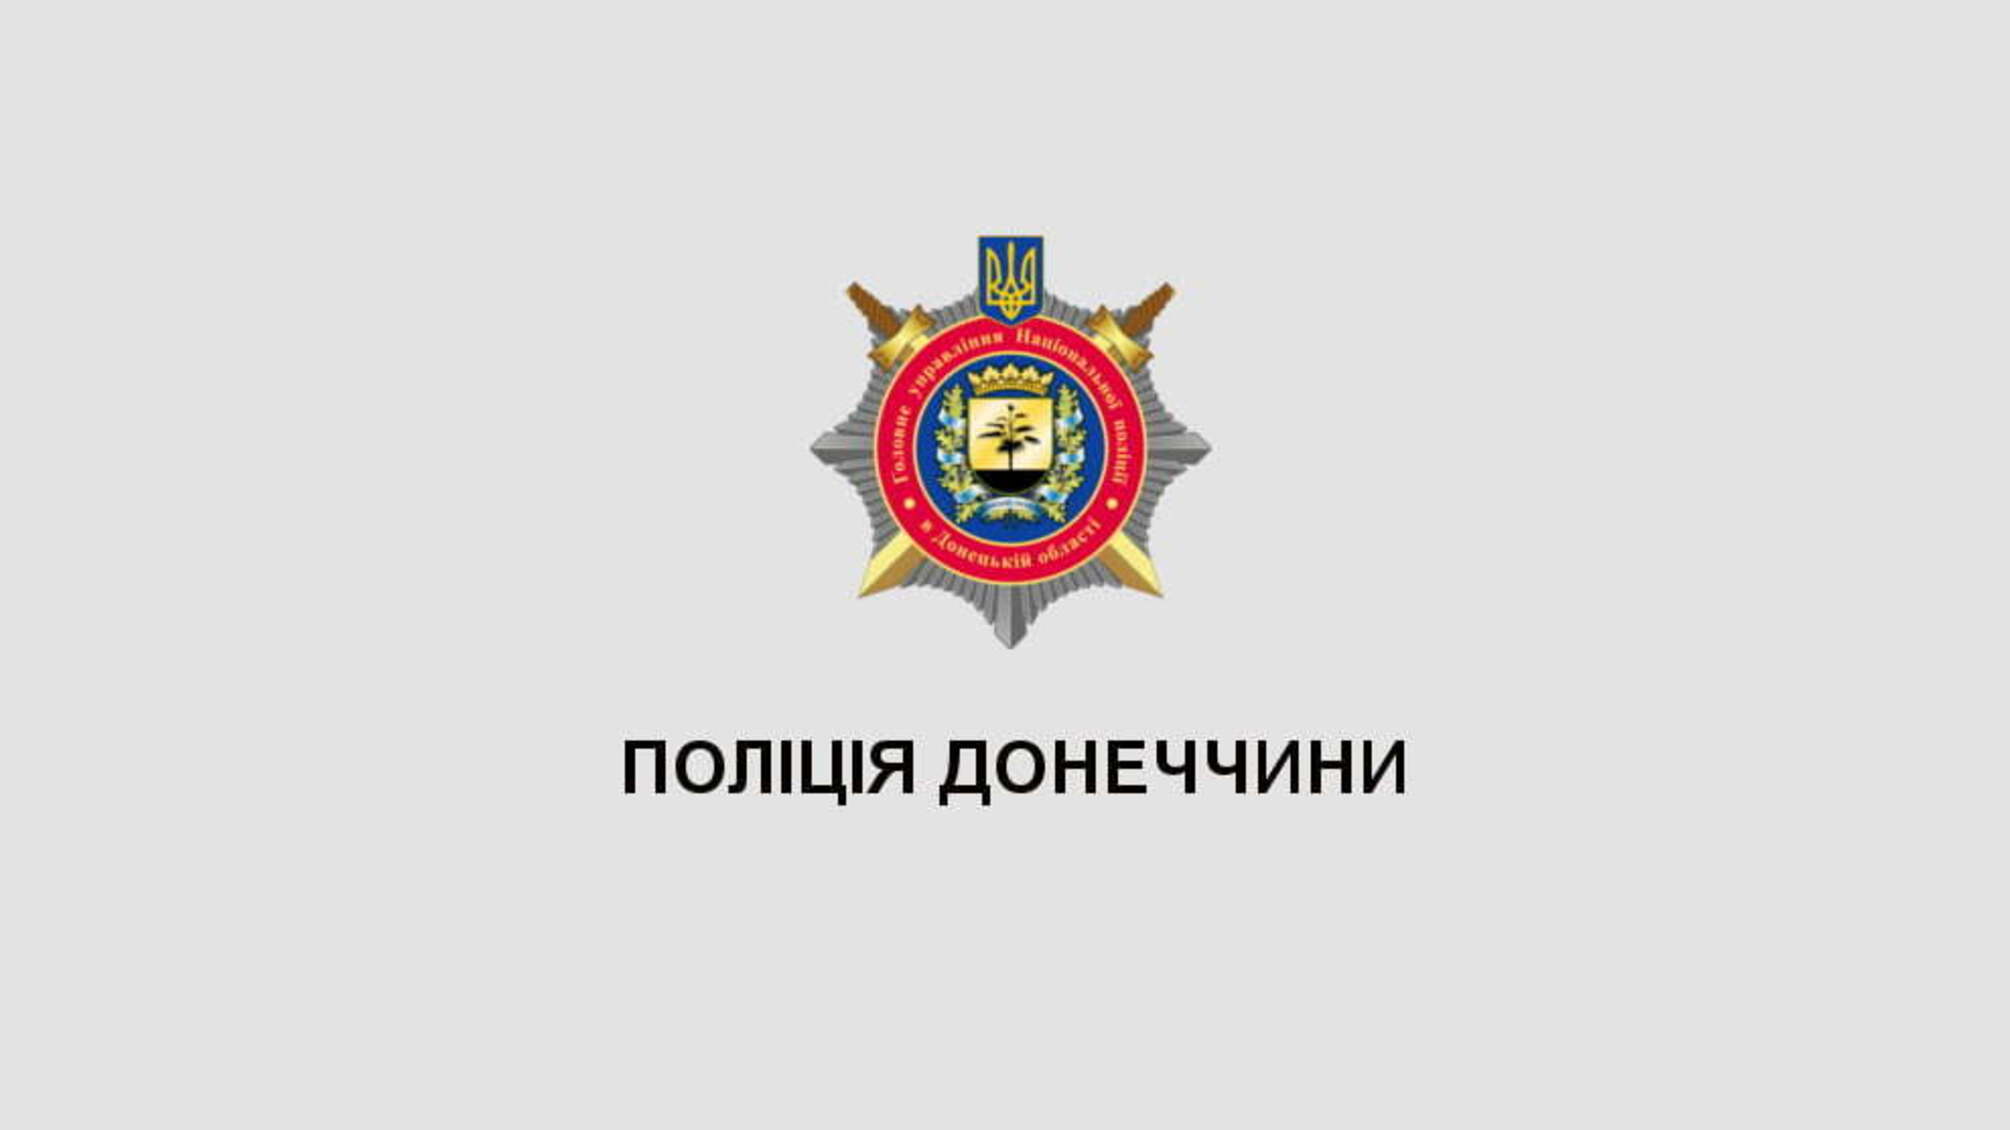 Поліція Донецької області готова забезпечити громадський порядок у поминальні дні, - Микола Семенишин